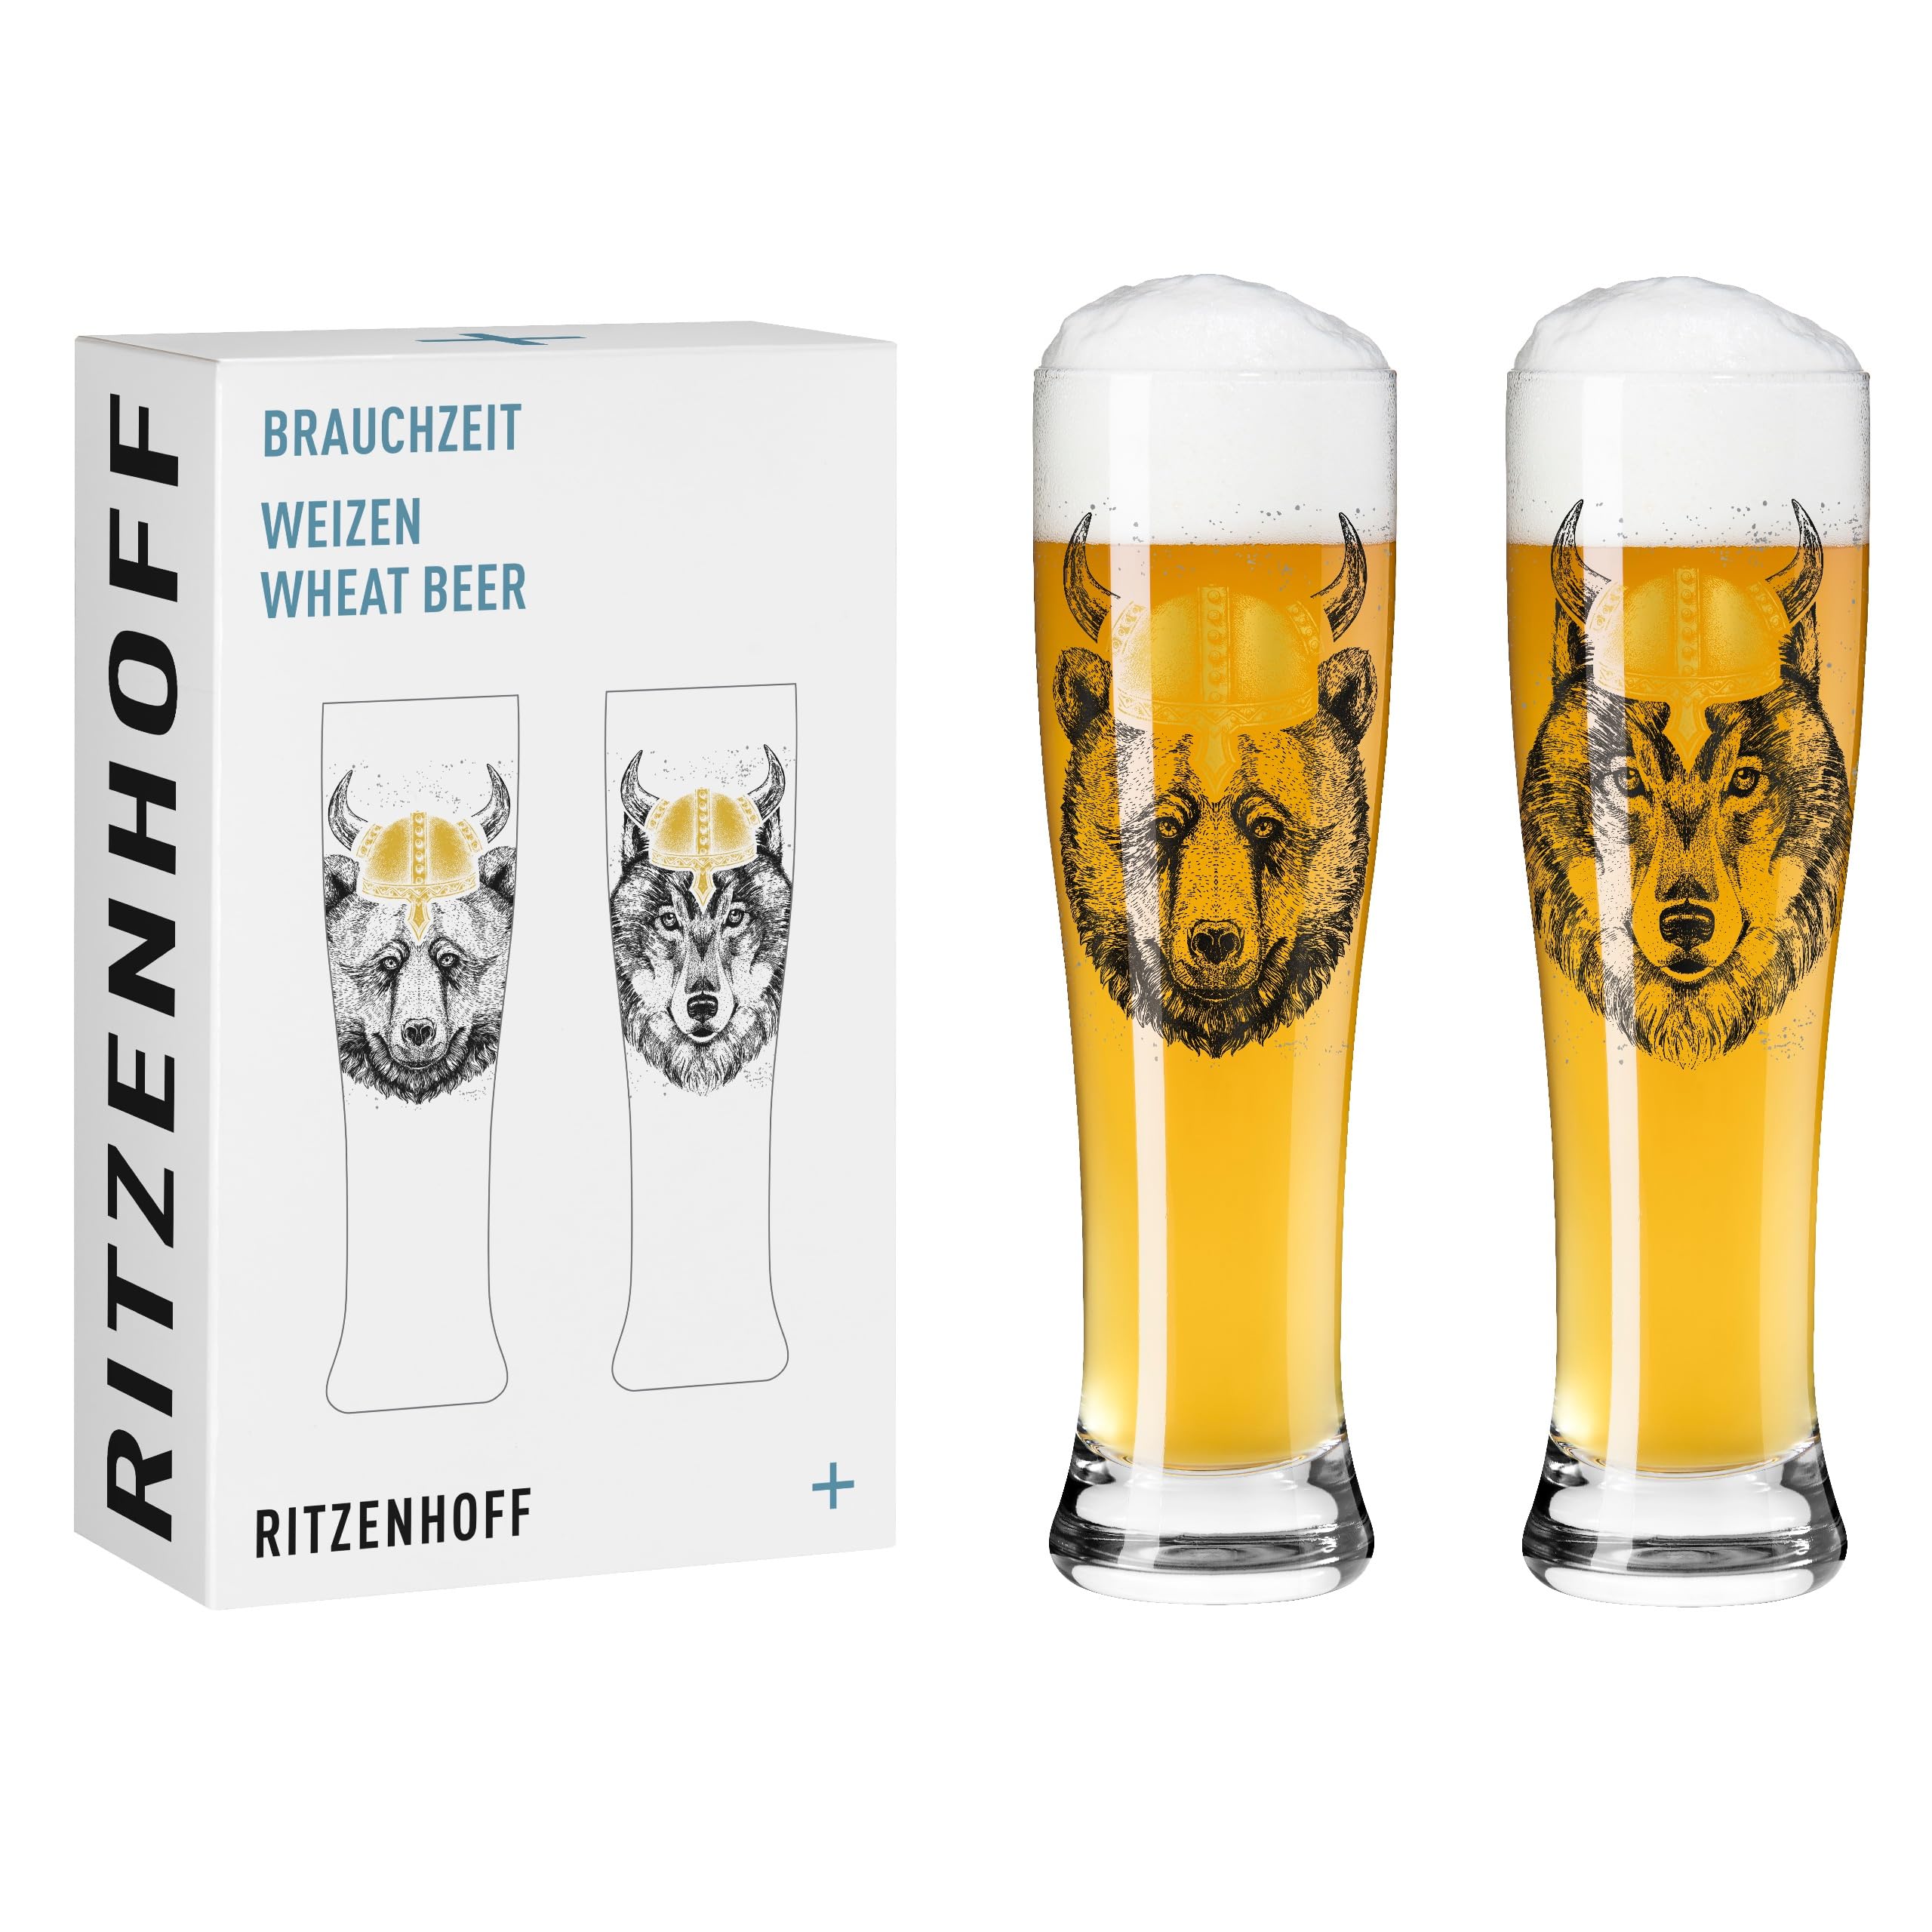 RITZENHOFF 3481008 Weizenbierglas 500 ml - 2er Set - Serie Brauchzeit - Tier Motiv, Gold und Schwarz - Made in Germany